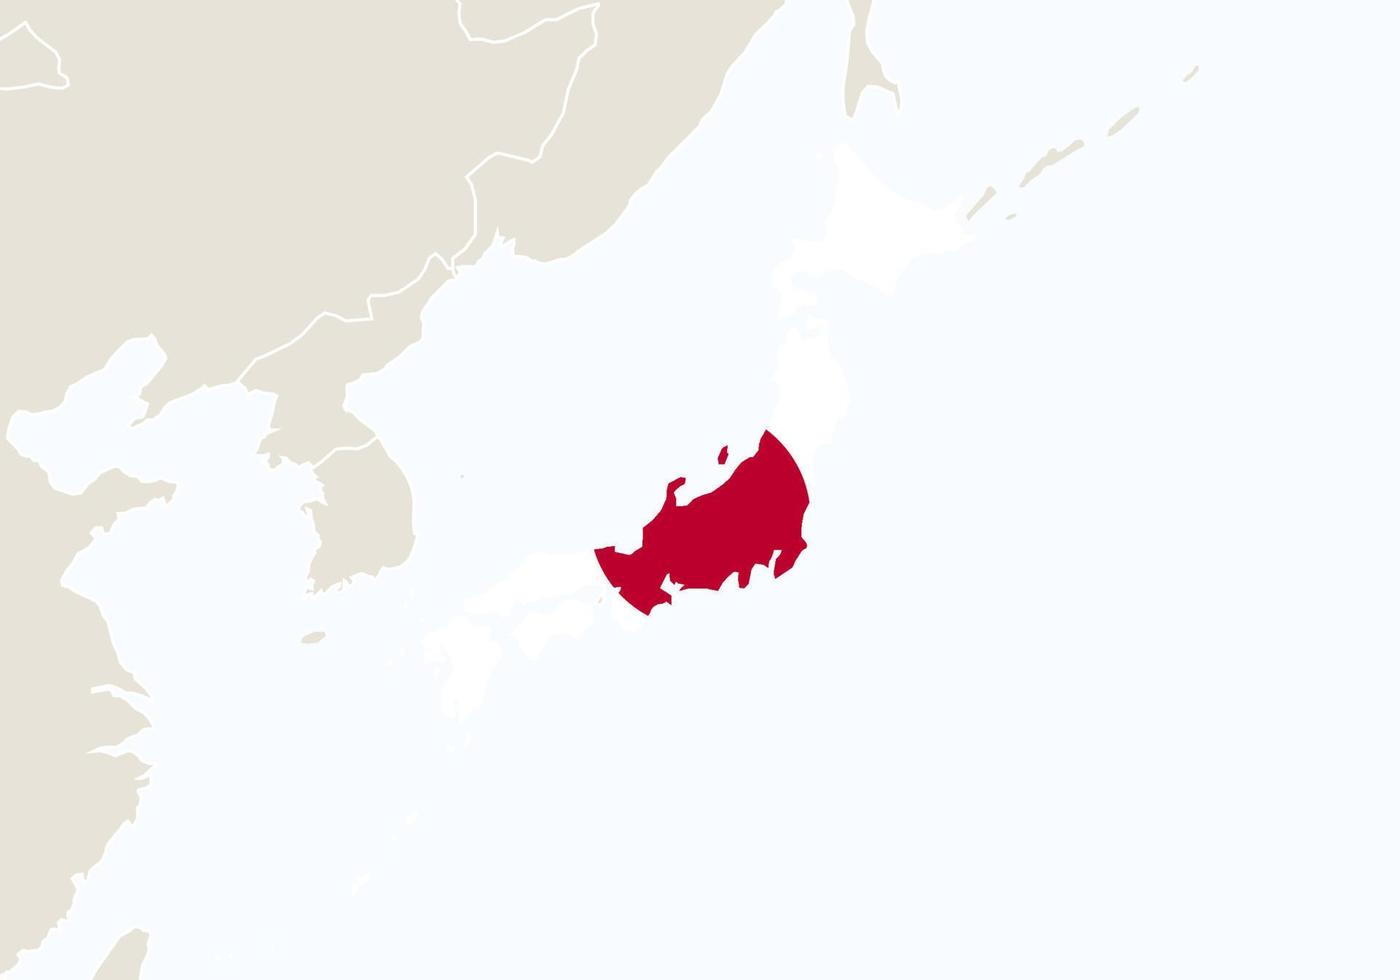 ásia com mapa destacado do japão. vetor